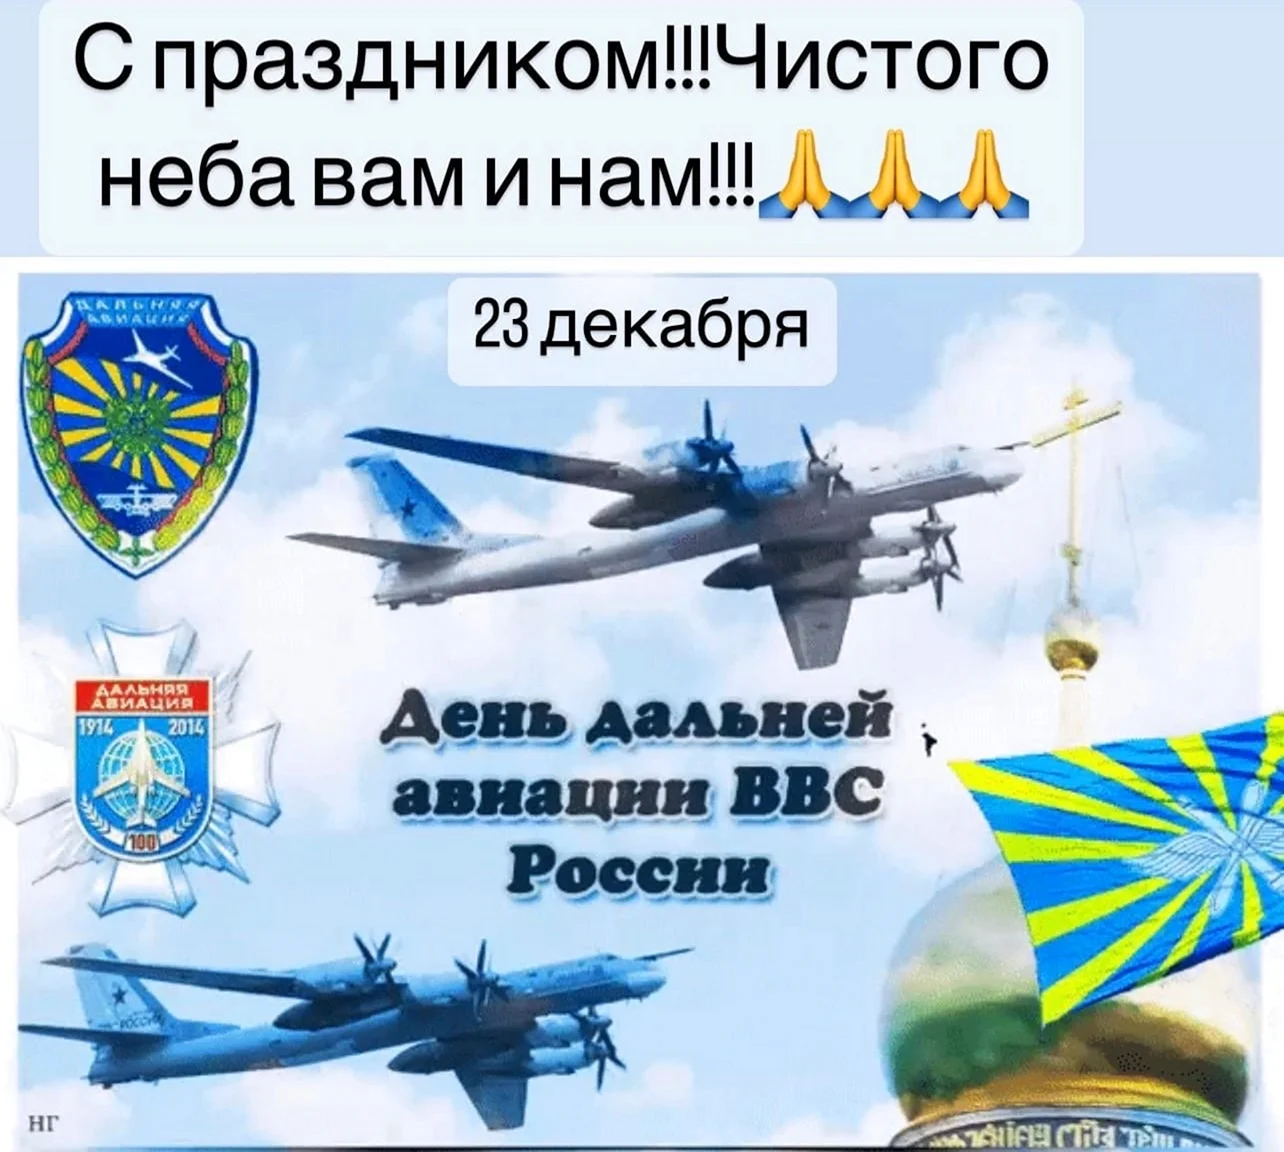 Дальней авиации ВВС Российской Федерации. Поздравление